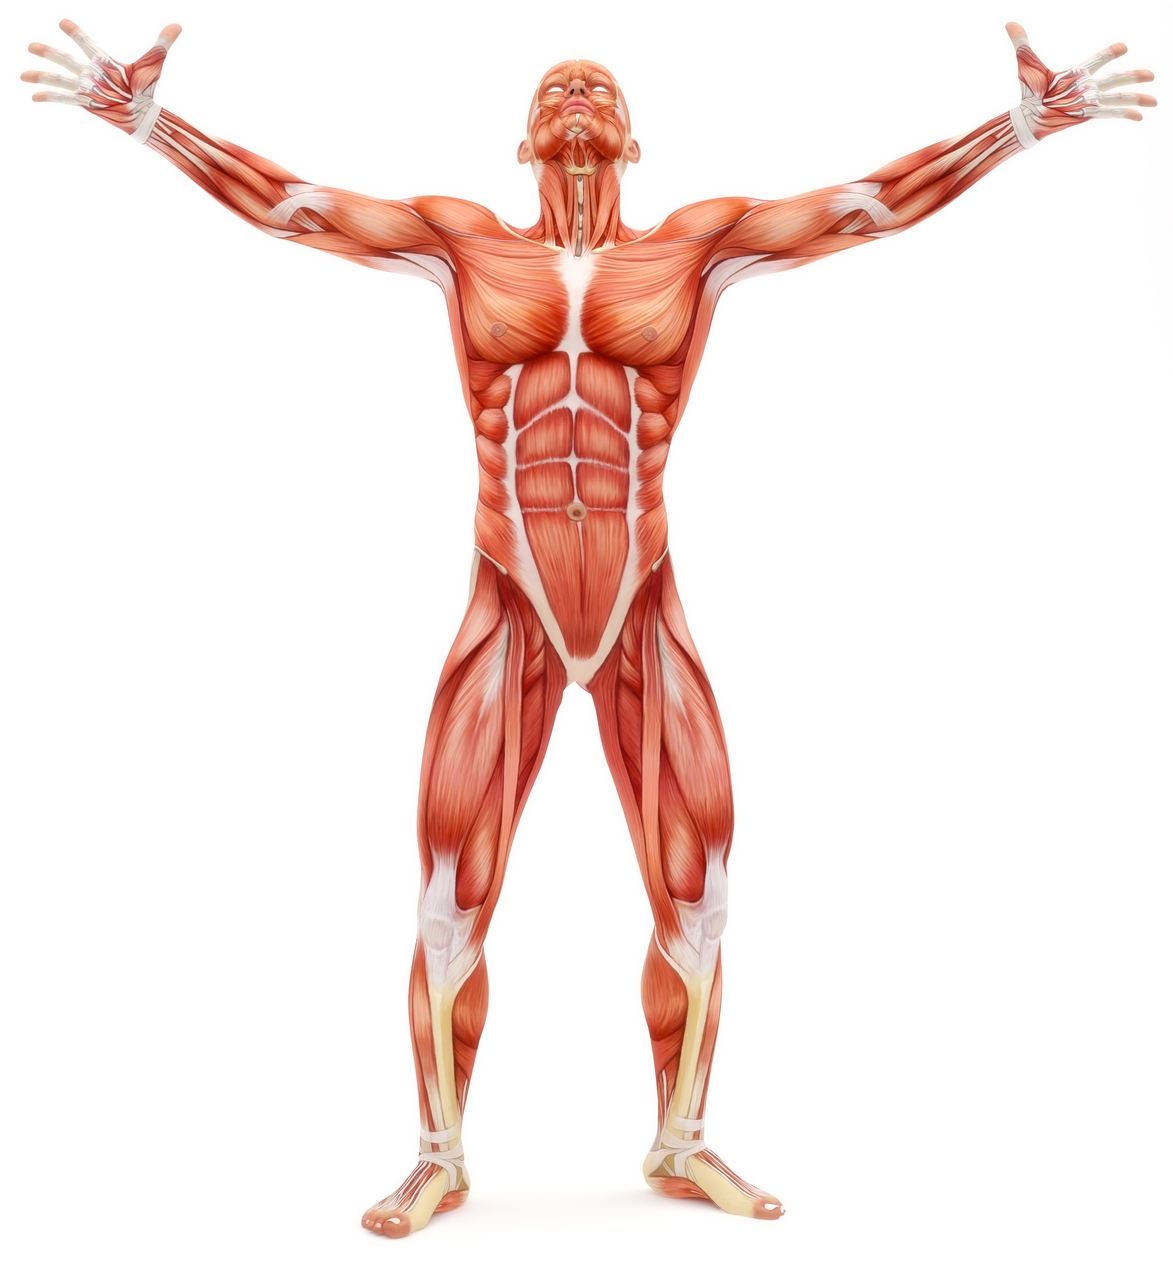 Umelé svaly: Ľudské telo je naďalej zlatým štandardom pre umelé svaly